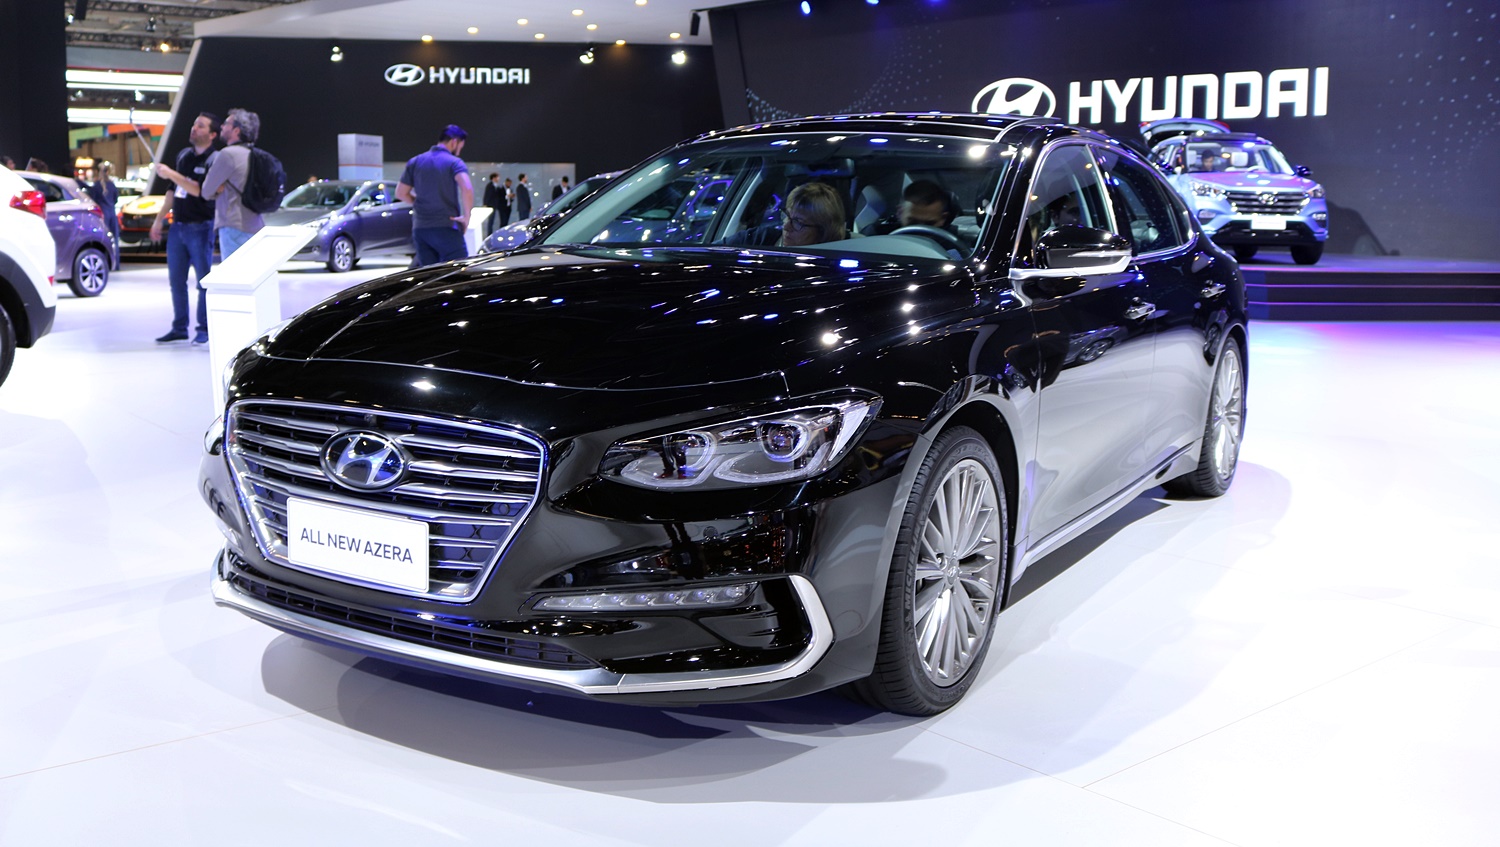 Novo Hyundai Azera chega no primeiro trimestre de 2019 com